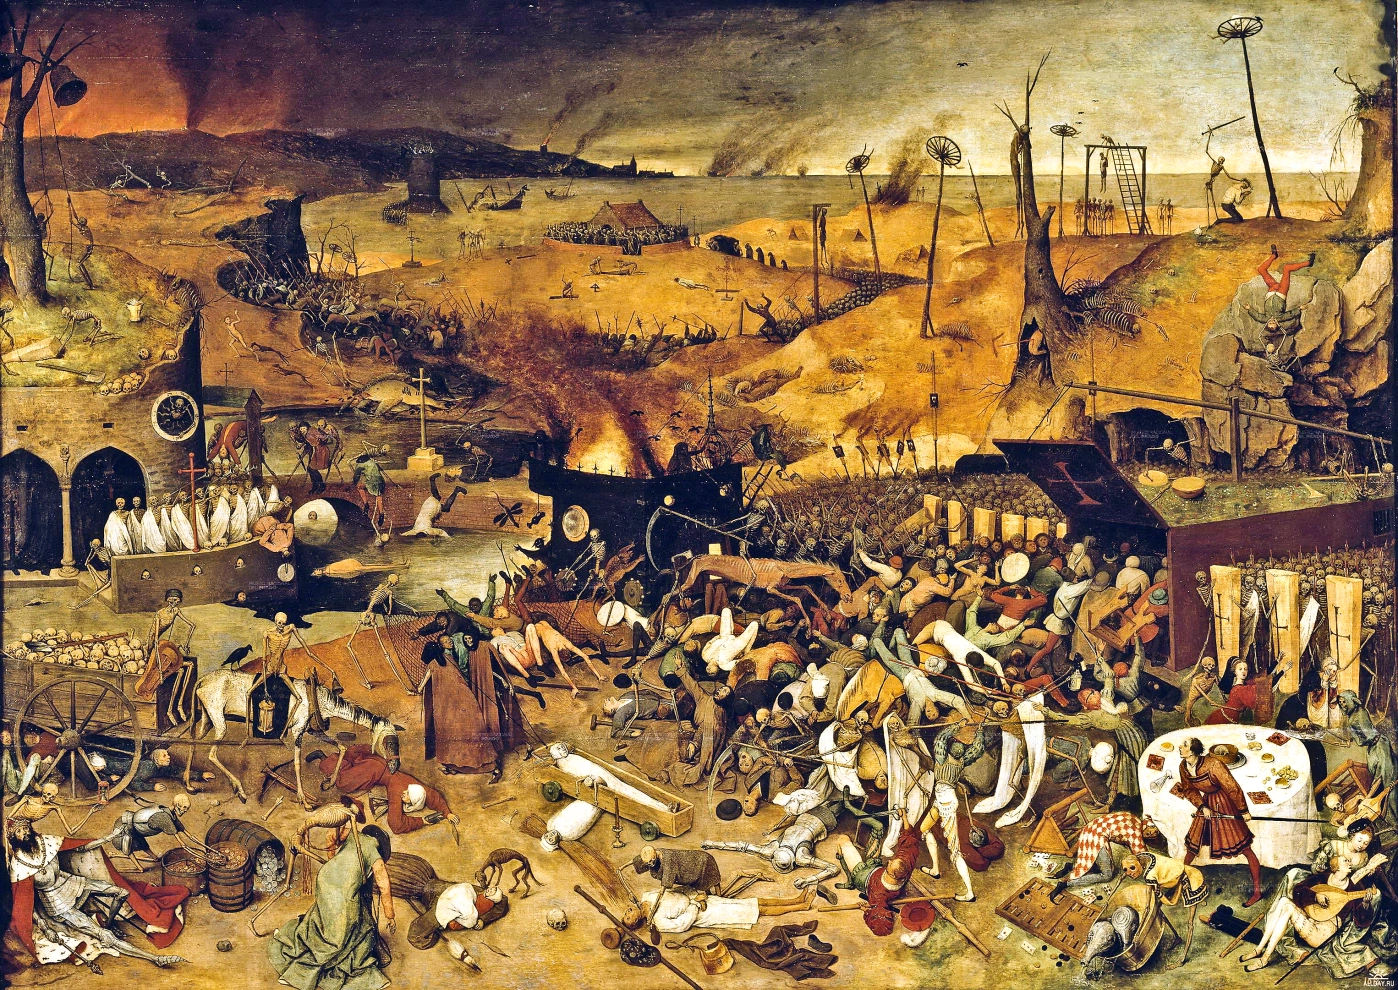 pieter-bruegel-the-elder-the-triumph-of-death-1562-museo-del-prado-madrid.jpg